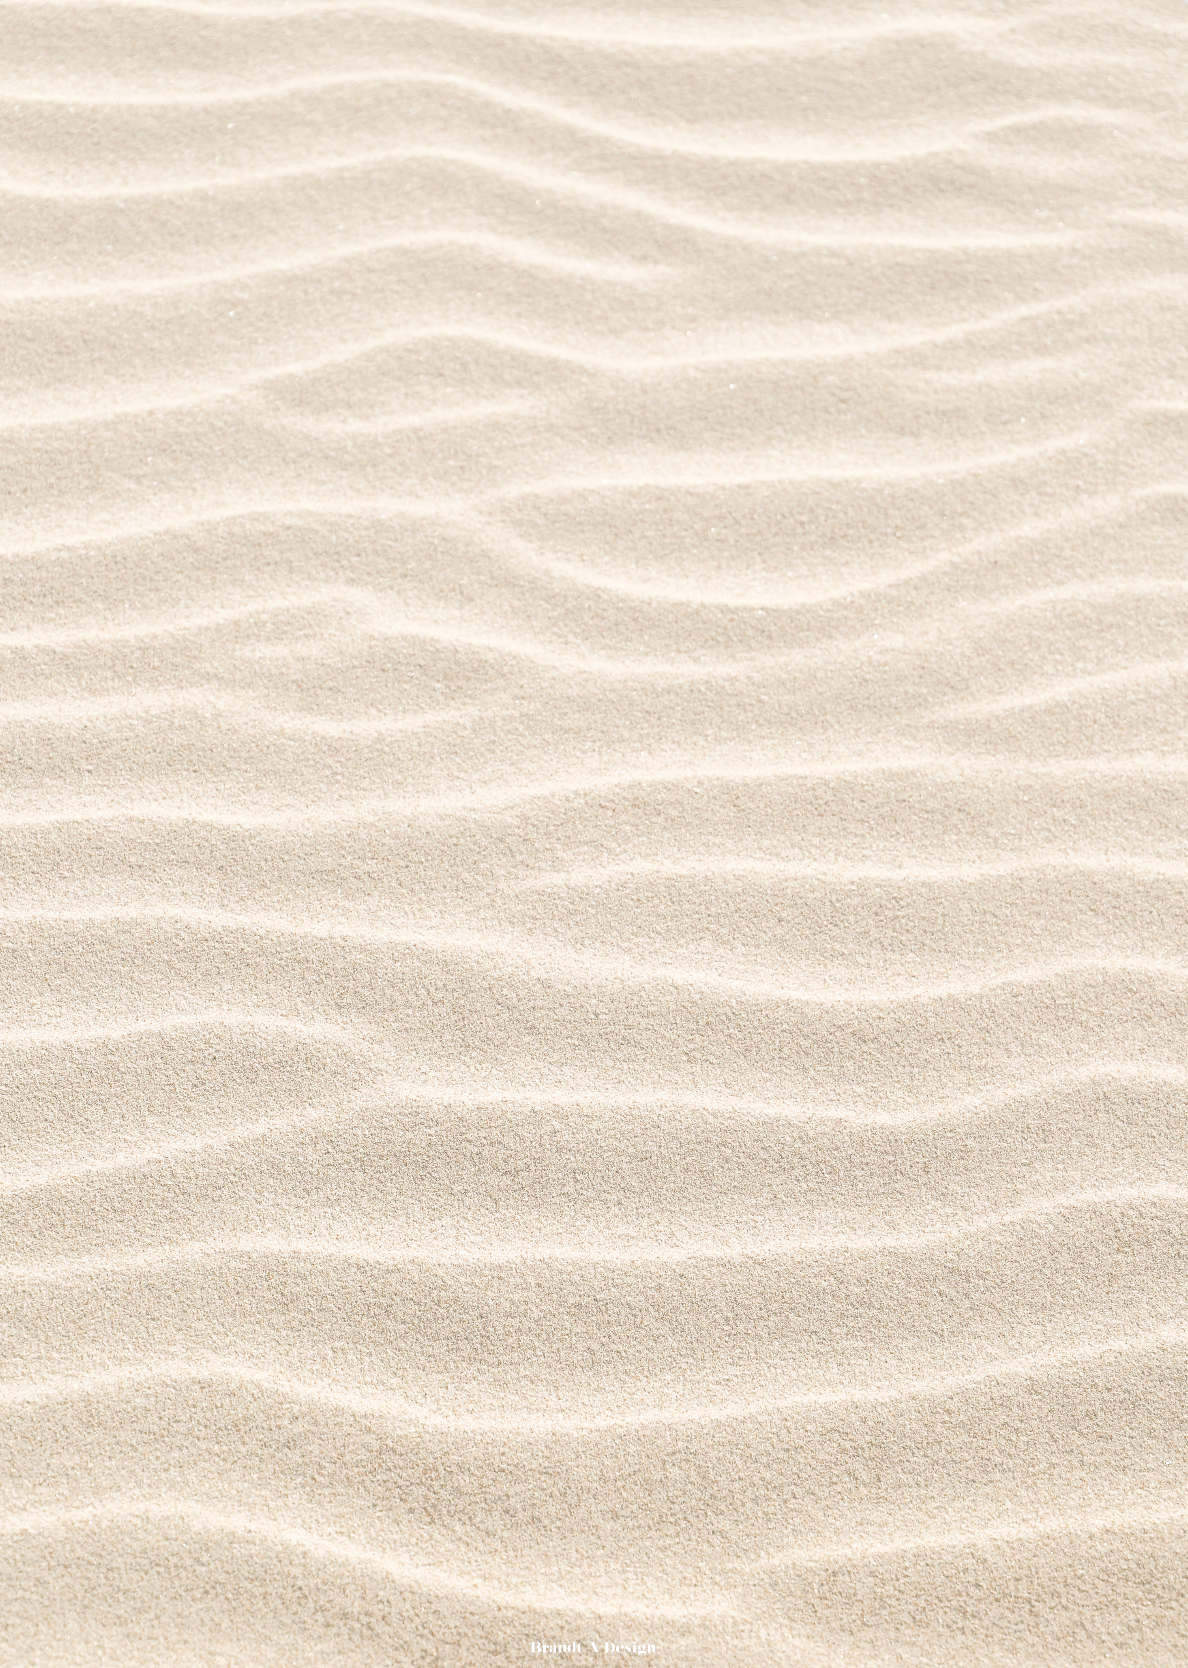 Linjer i sandet